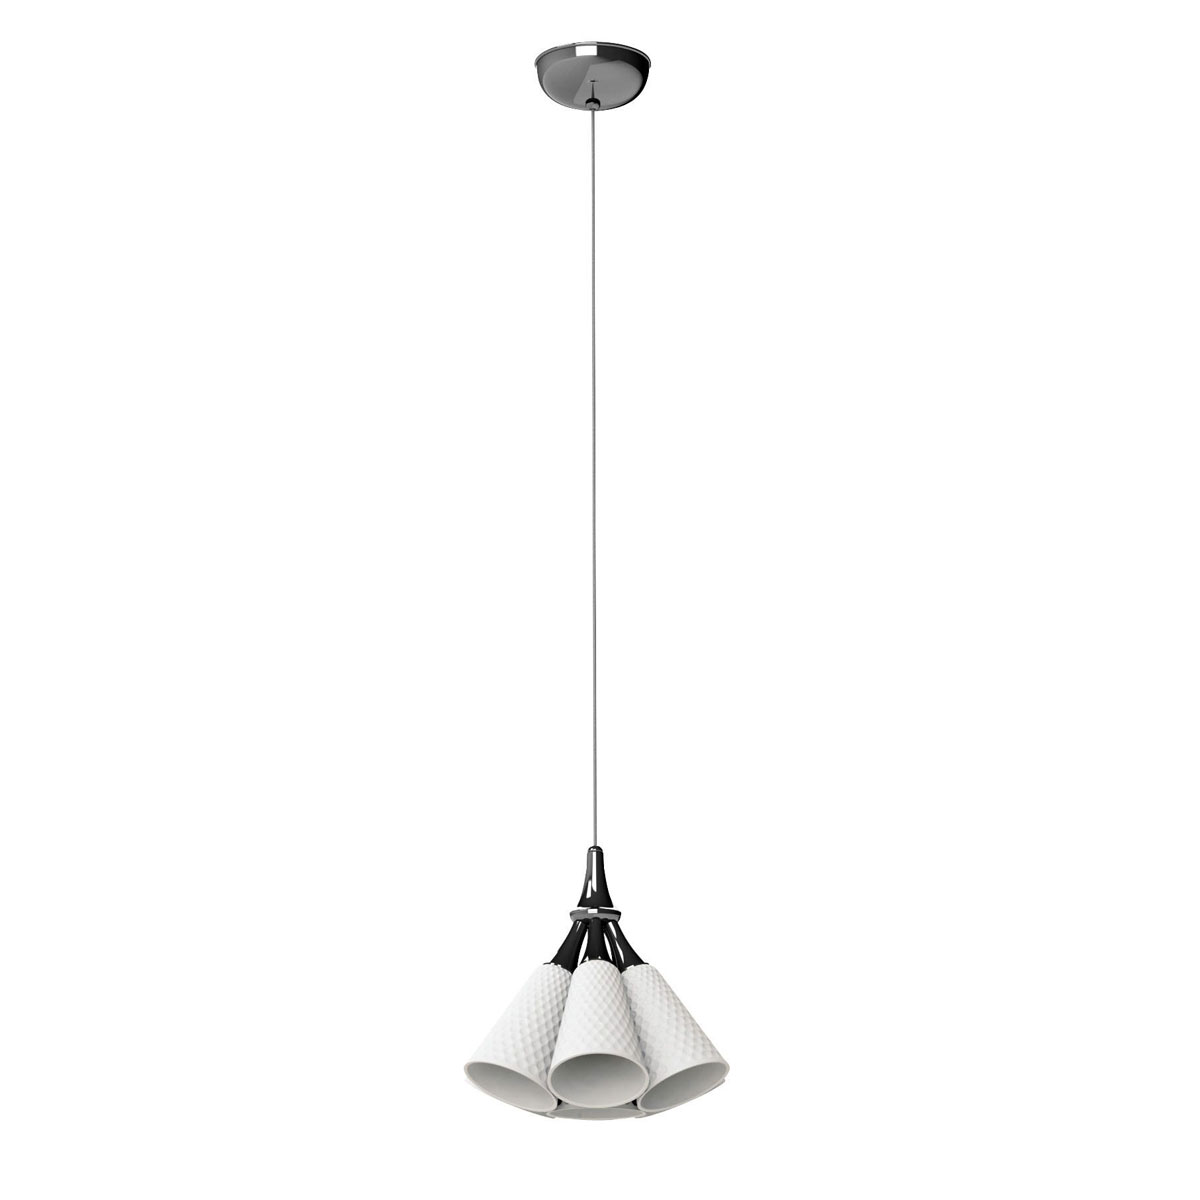 Lladro Modern Lighting, Jamz Hanging Lamp. Black